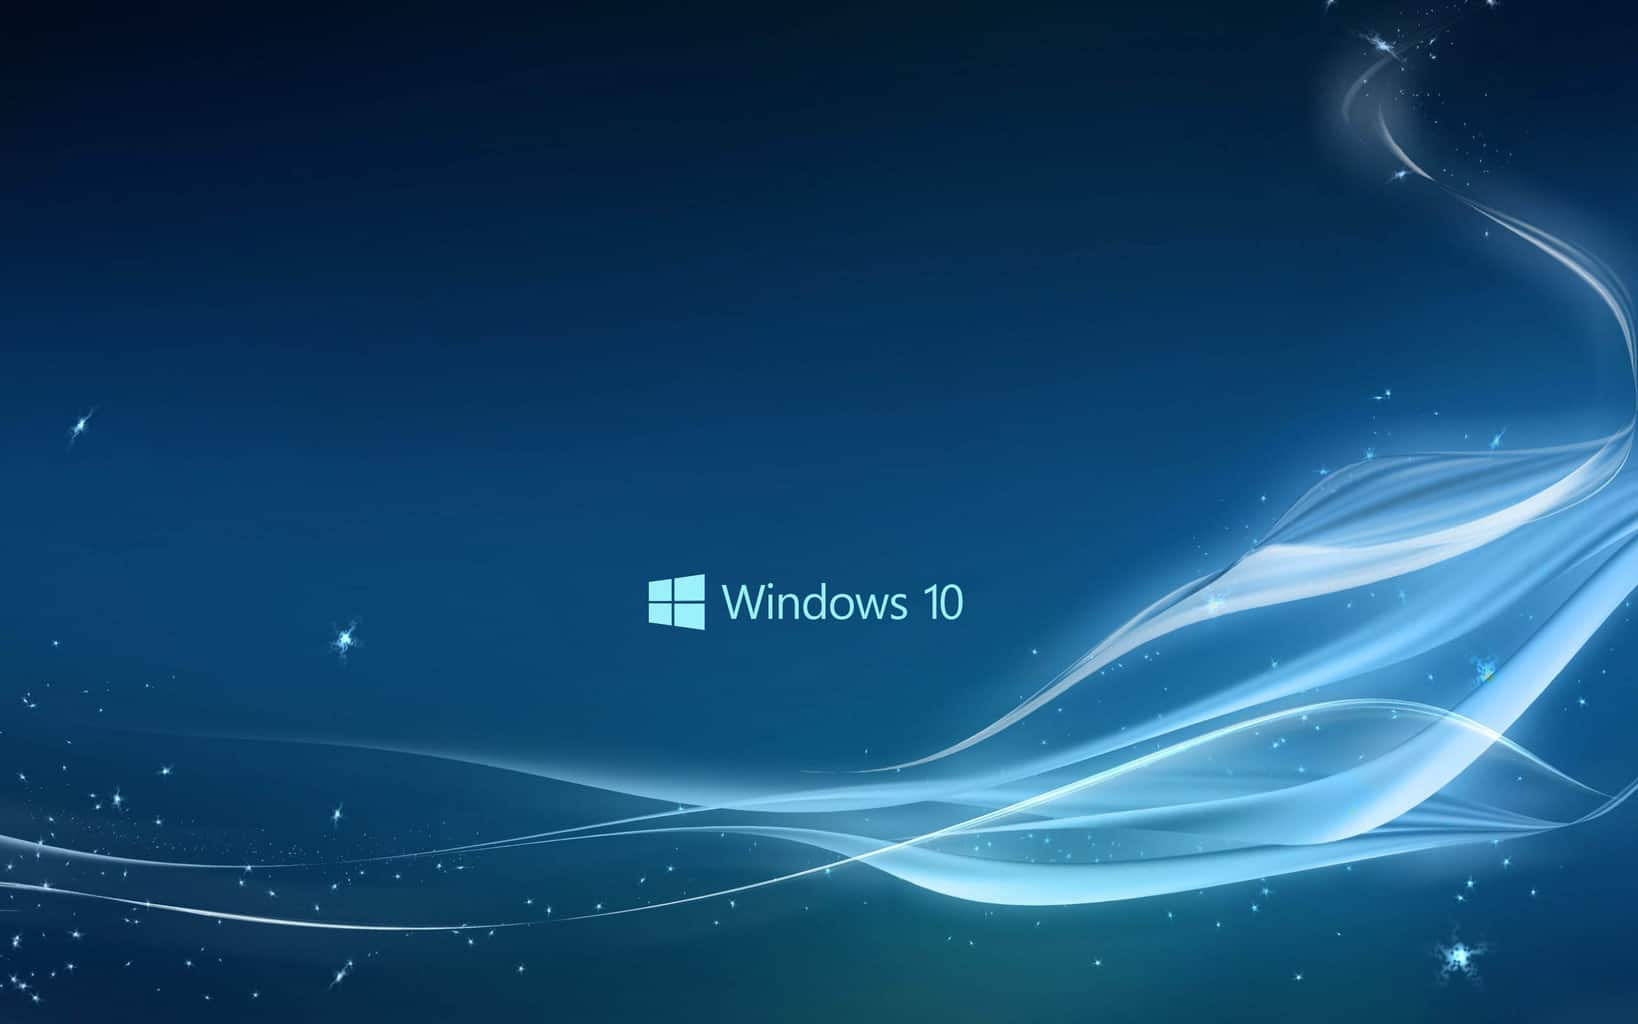 Hình nền Windows 10 đẹp nhất sẽ mang lại cho bạn cảm giác thư thái và đổi mới. Hãy khám phá ngay các tùy chọn hình nền độc đáo và được thiết kế đặc biệt để mang lại trải nghiệm tuyệt vời cho màn hình máy tính của bạn.